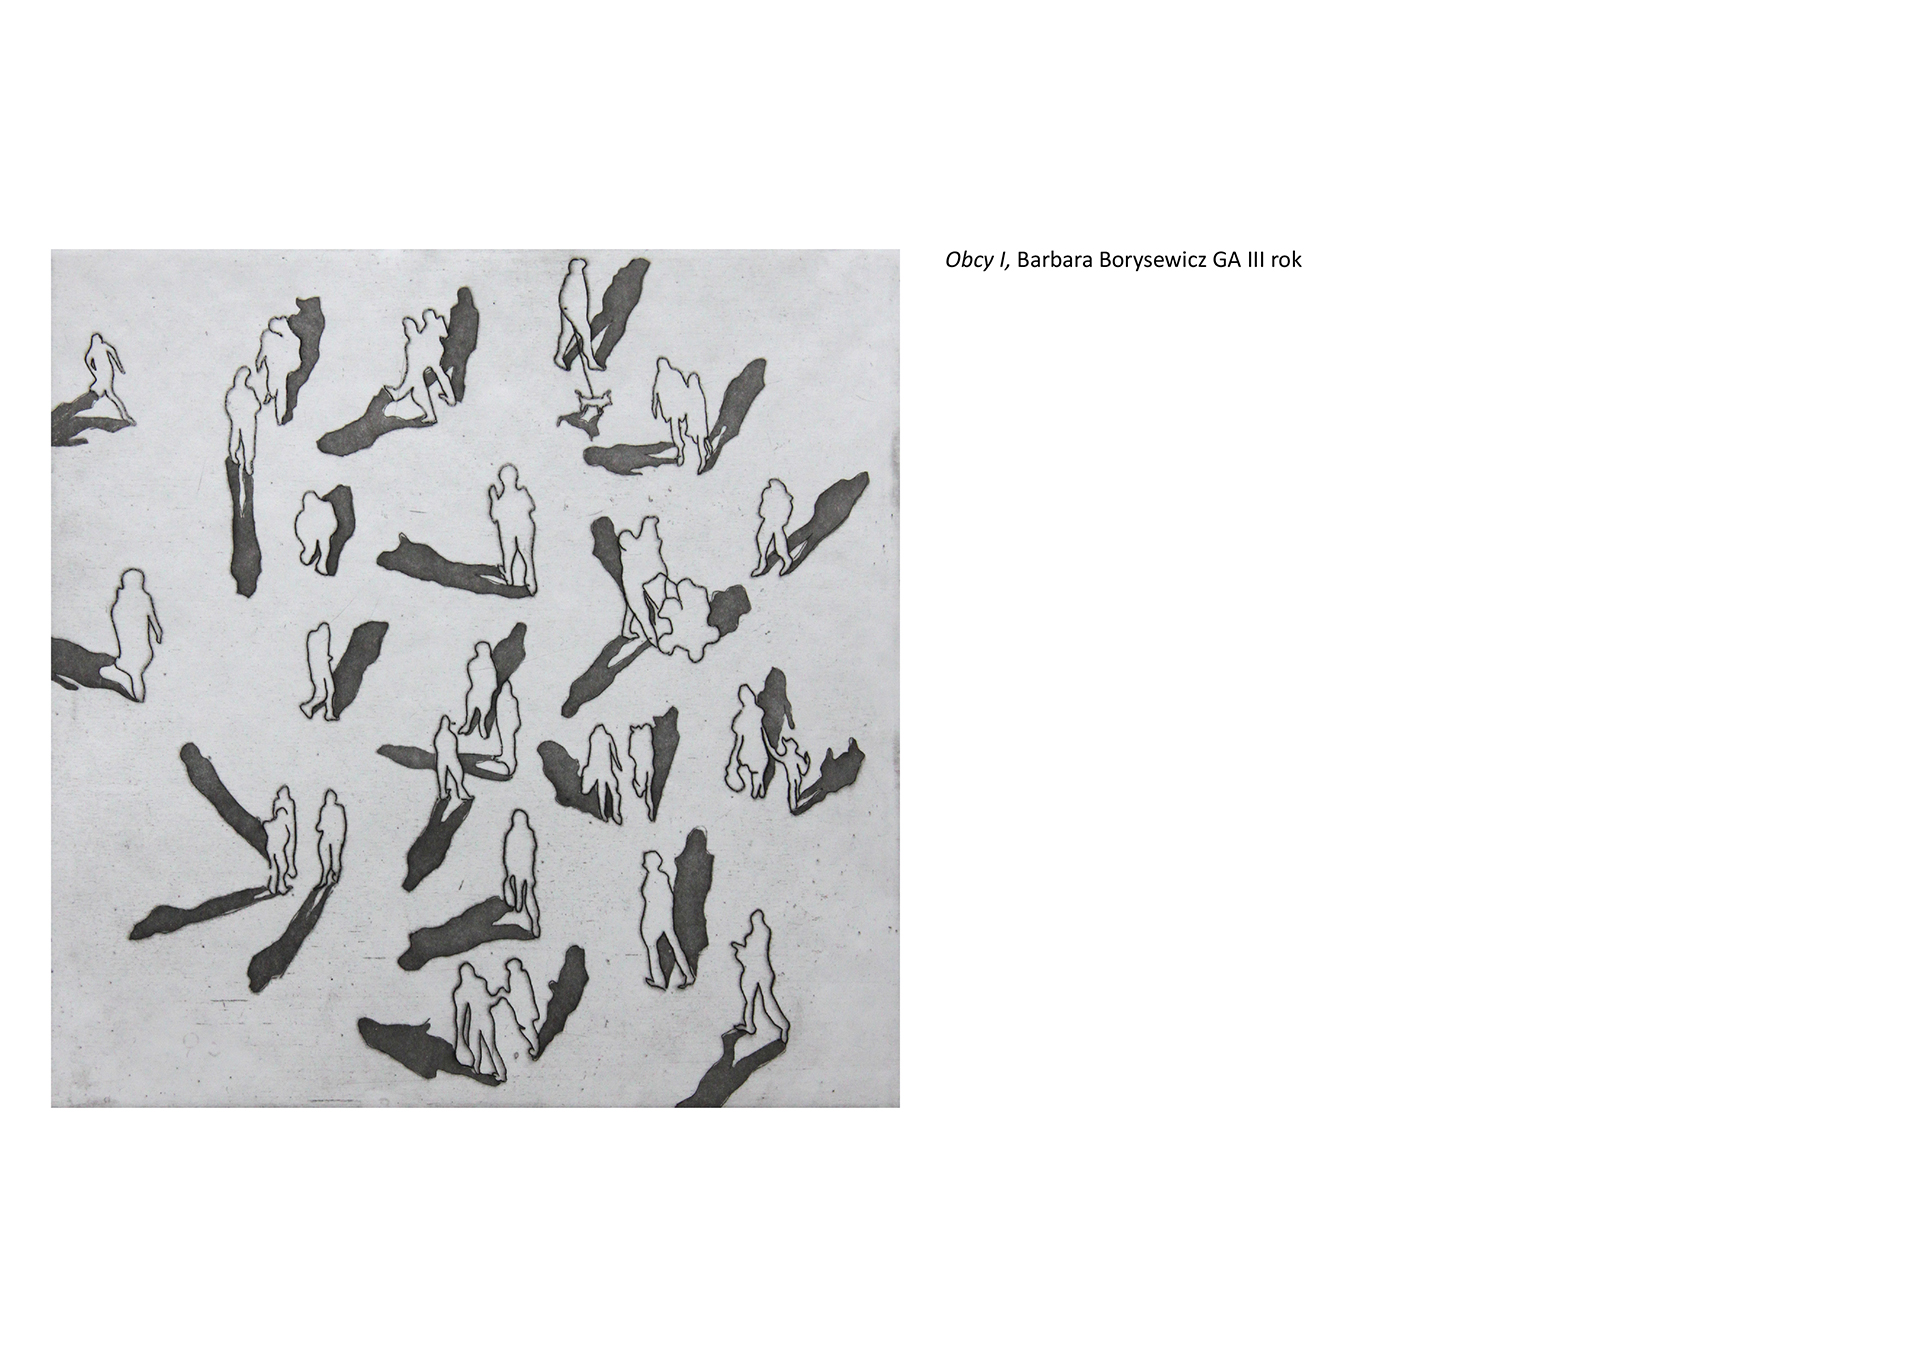 Tytuł: Obcy I. Autorka:  Barbara Borysewicz. Grafika przedstawia kształty ludzkie w tłumie rzucające cienie w nieregularny sposób. Perspektywa z lotu ptaka. 